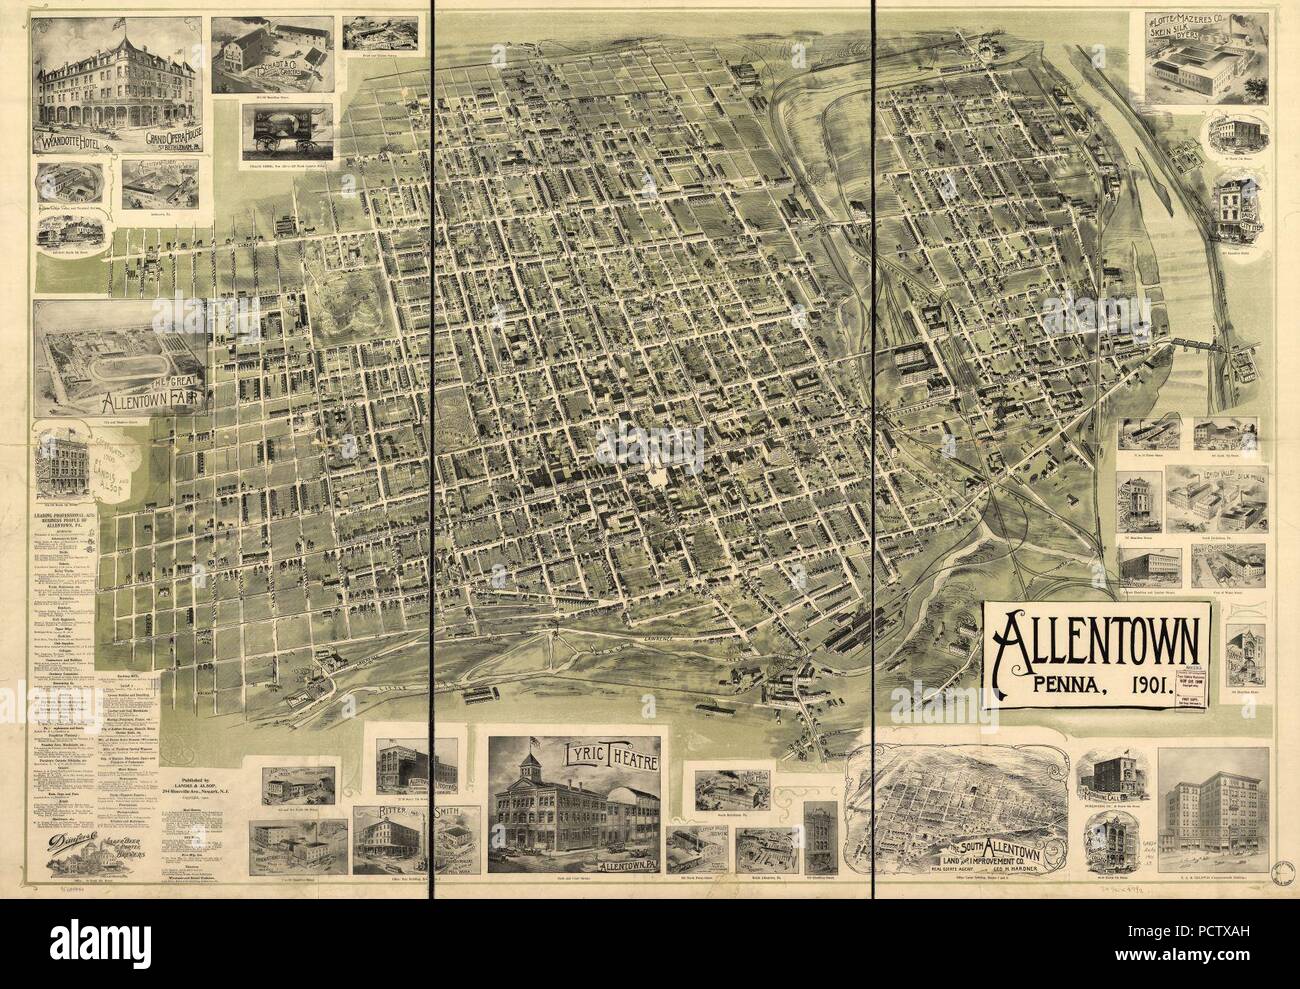 Allentown, Penna. 1901. Stock Photo